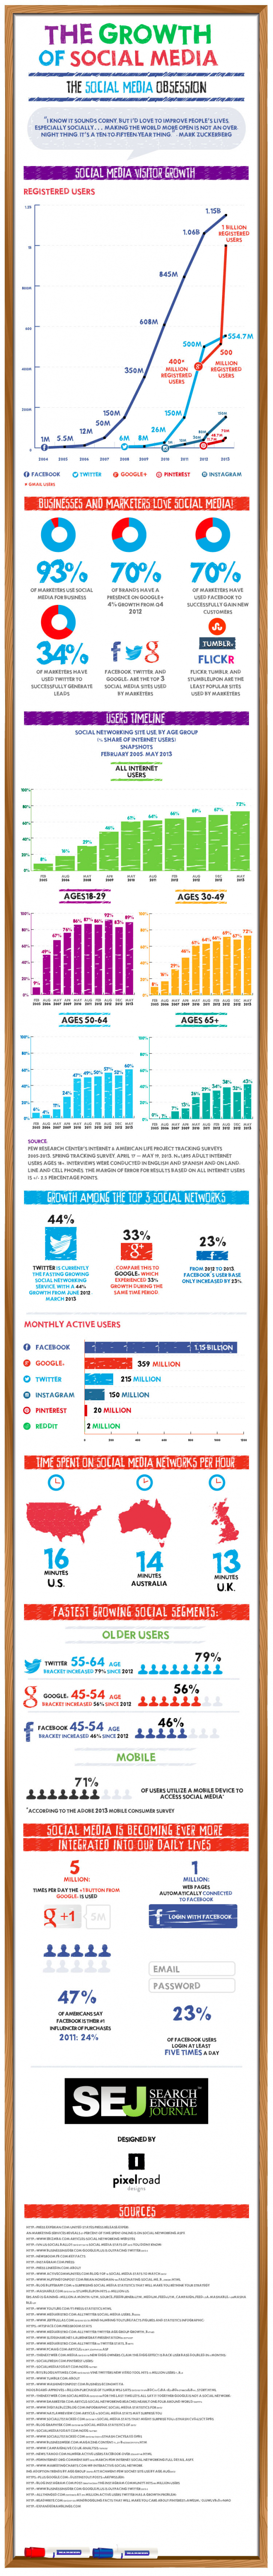 growth-of-social-media